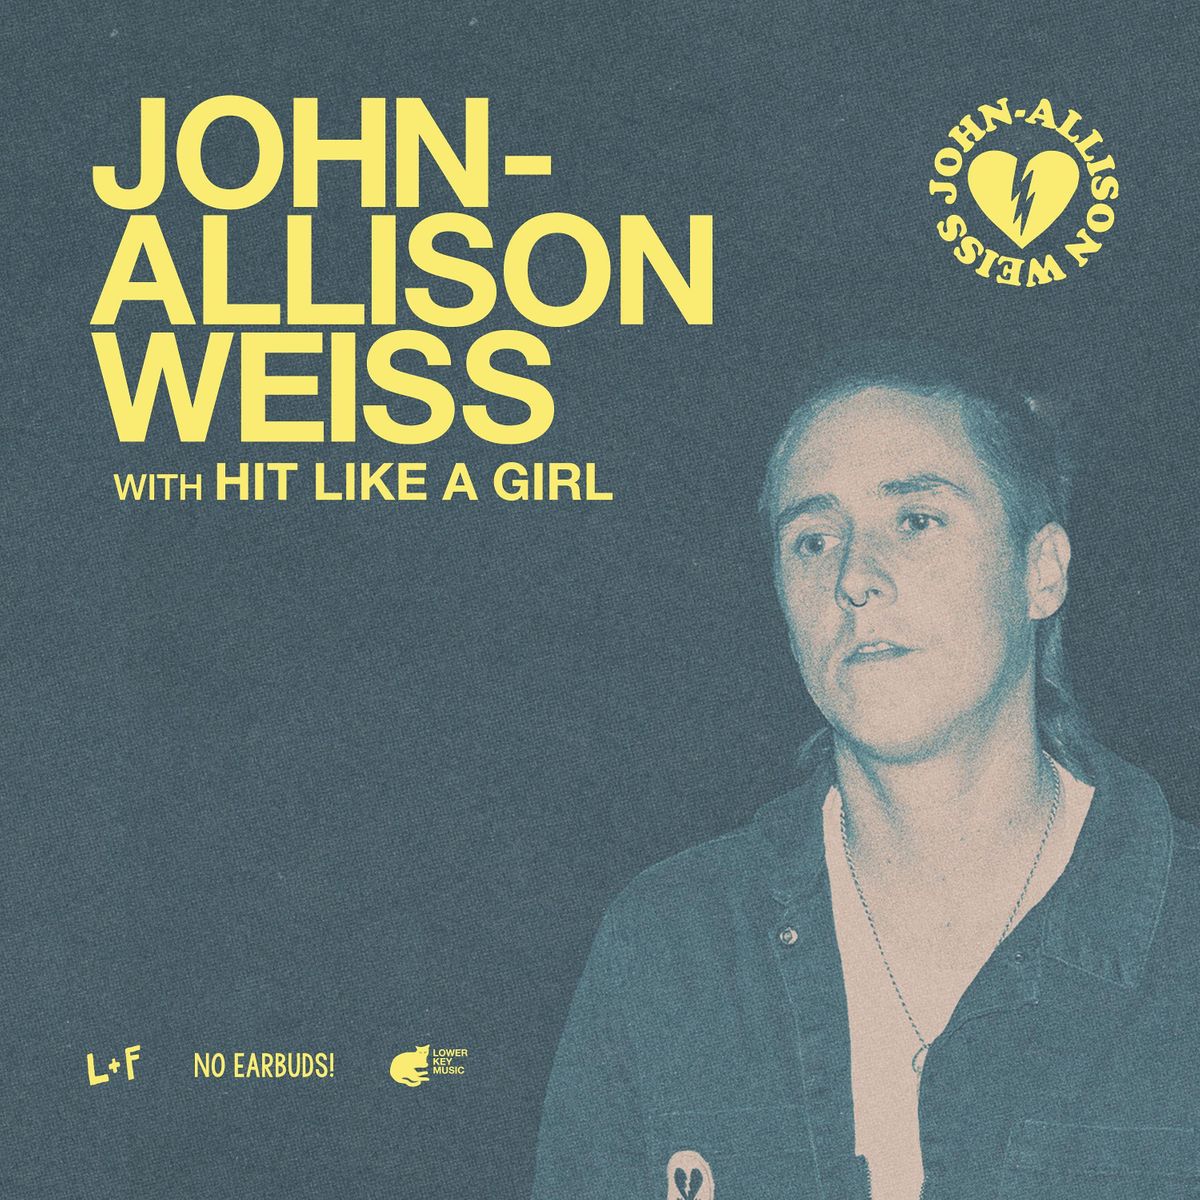 John-Allison Weiss